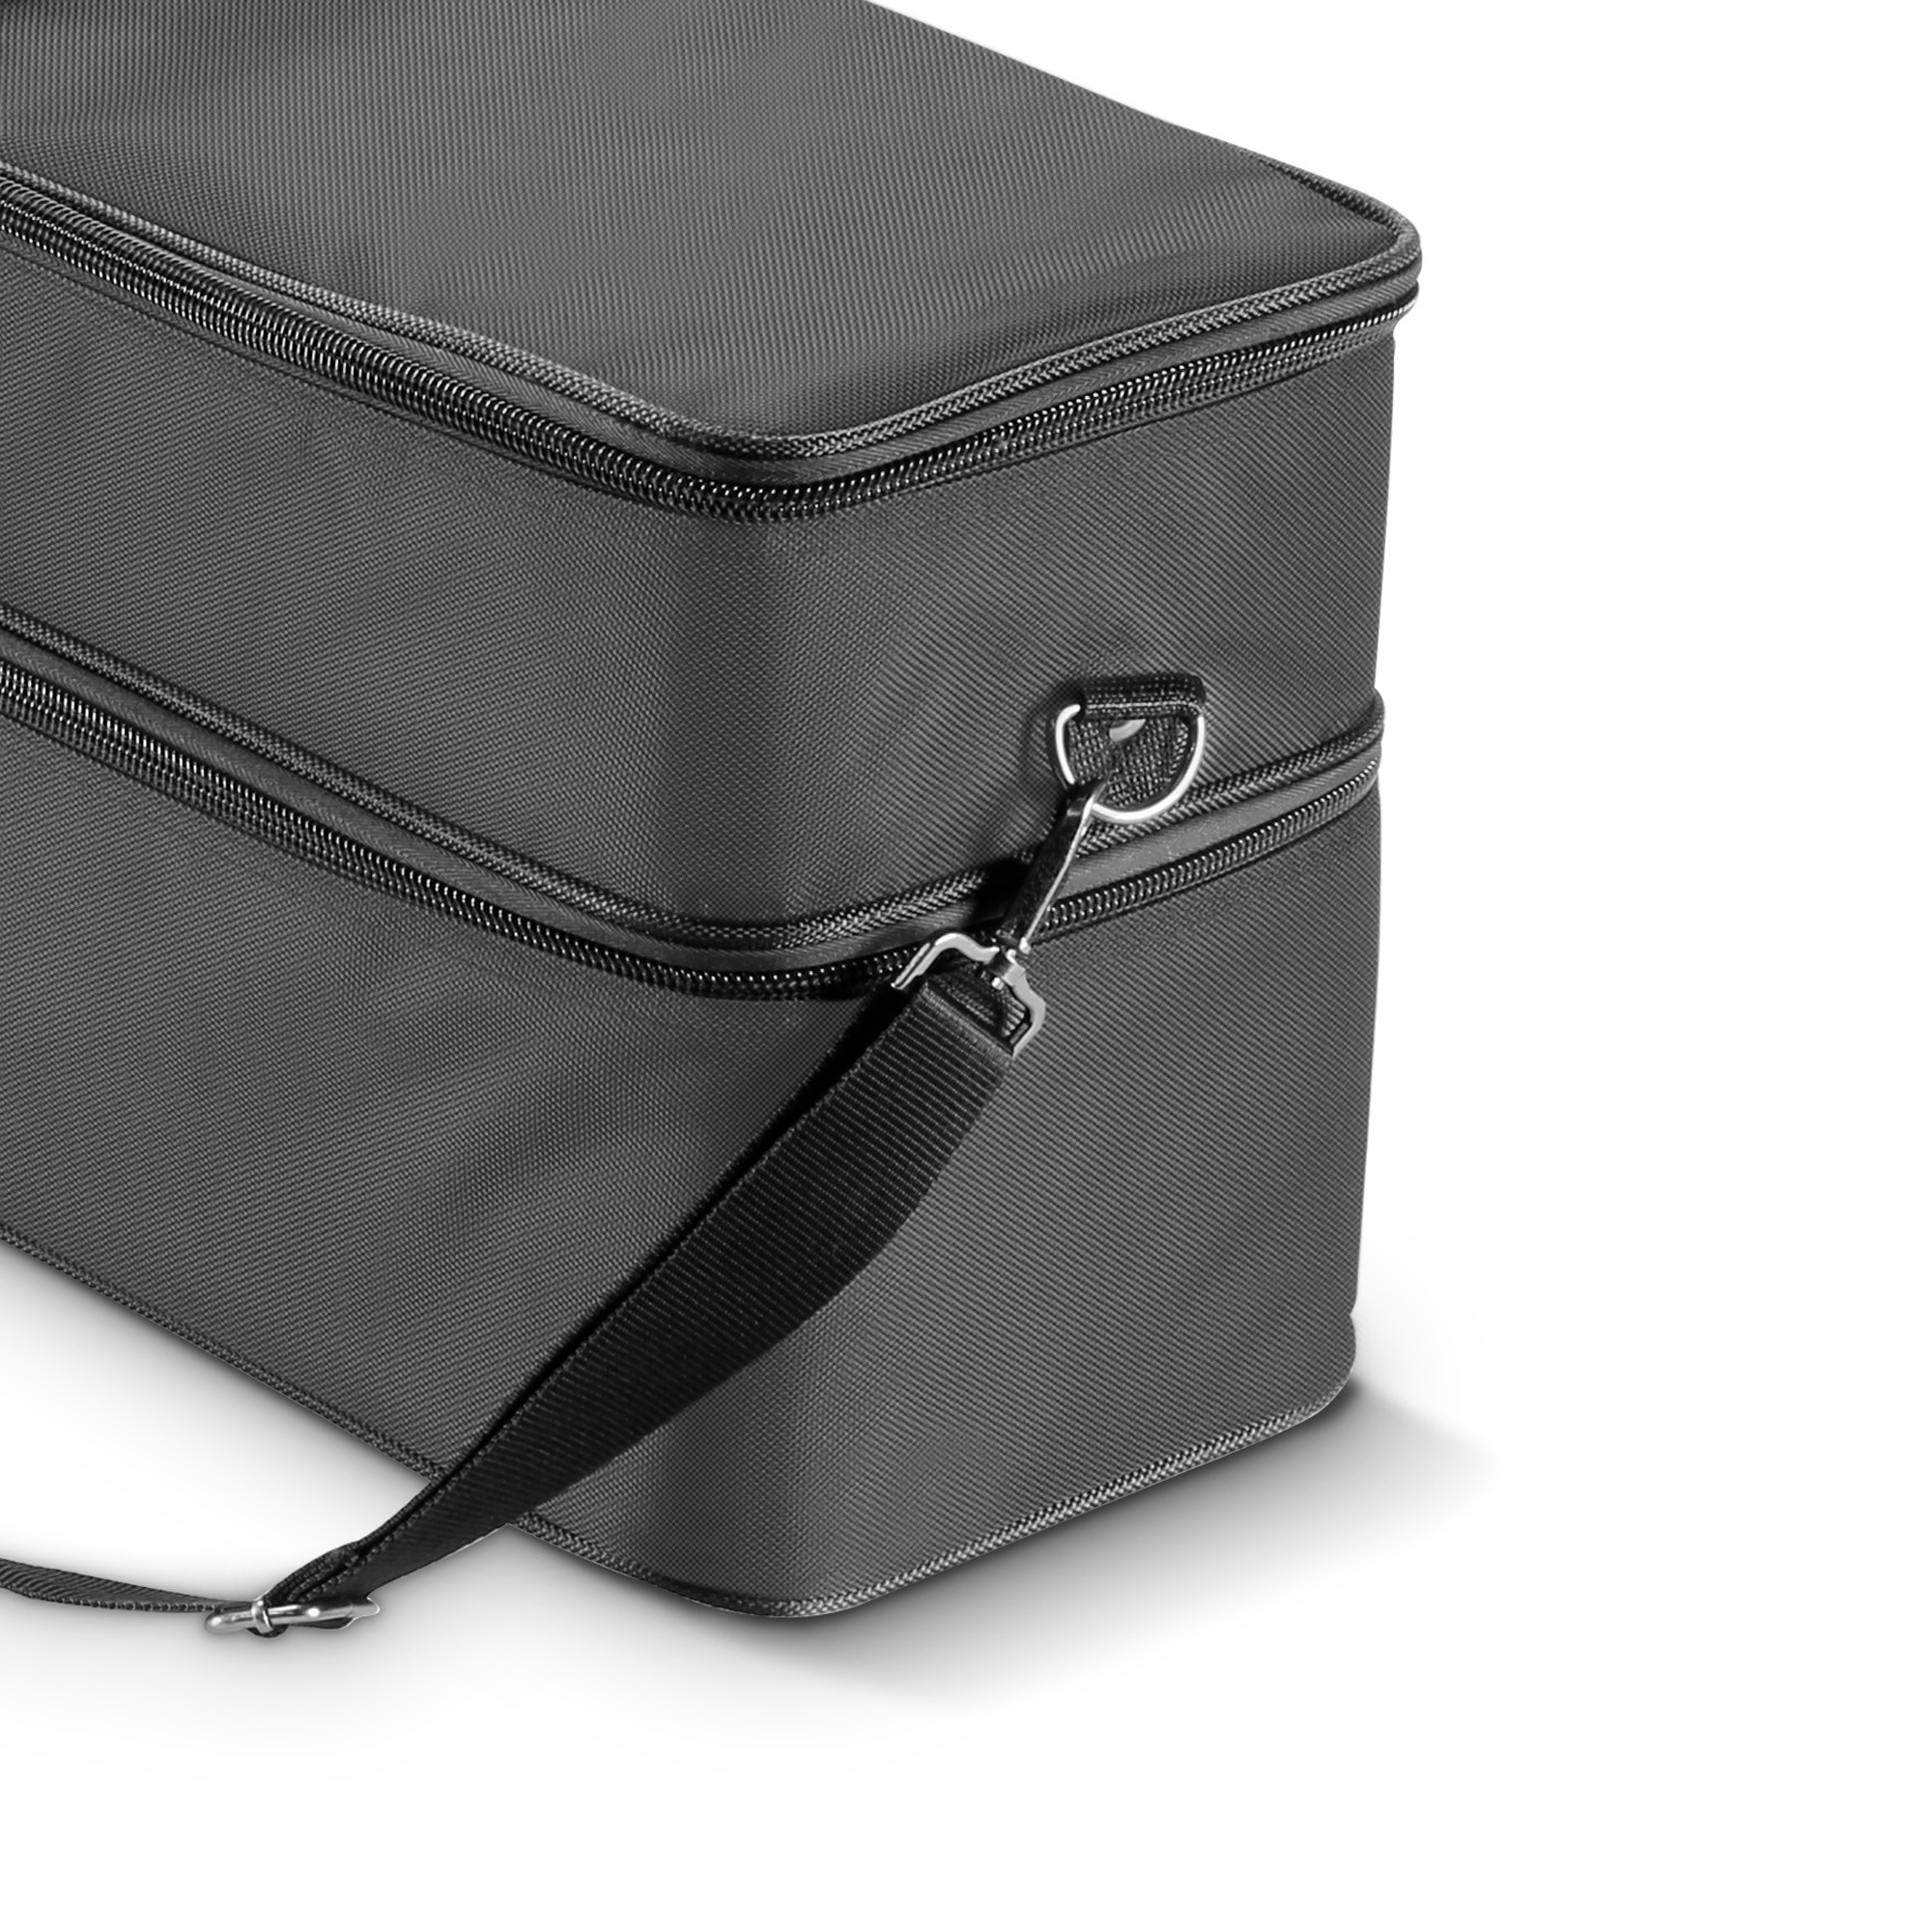 Ld Systems Curv 500 Ts Sat Bag - Bag for speakers & subwoofer - Variation 5